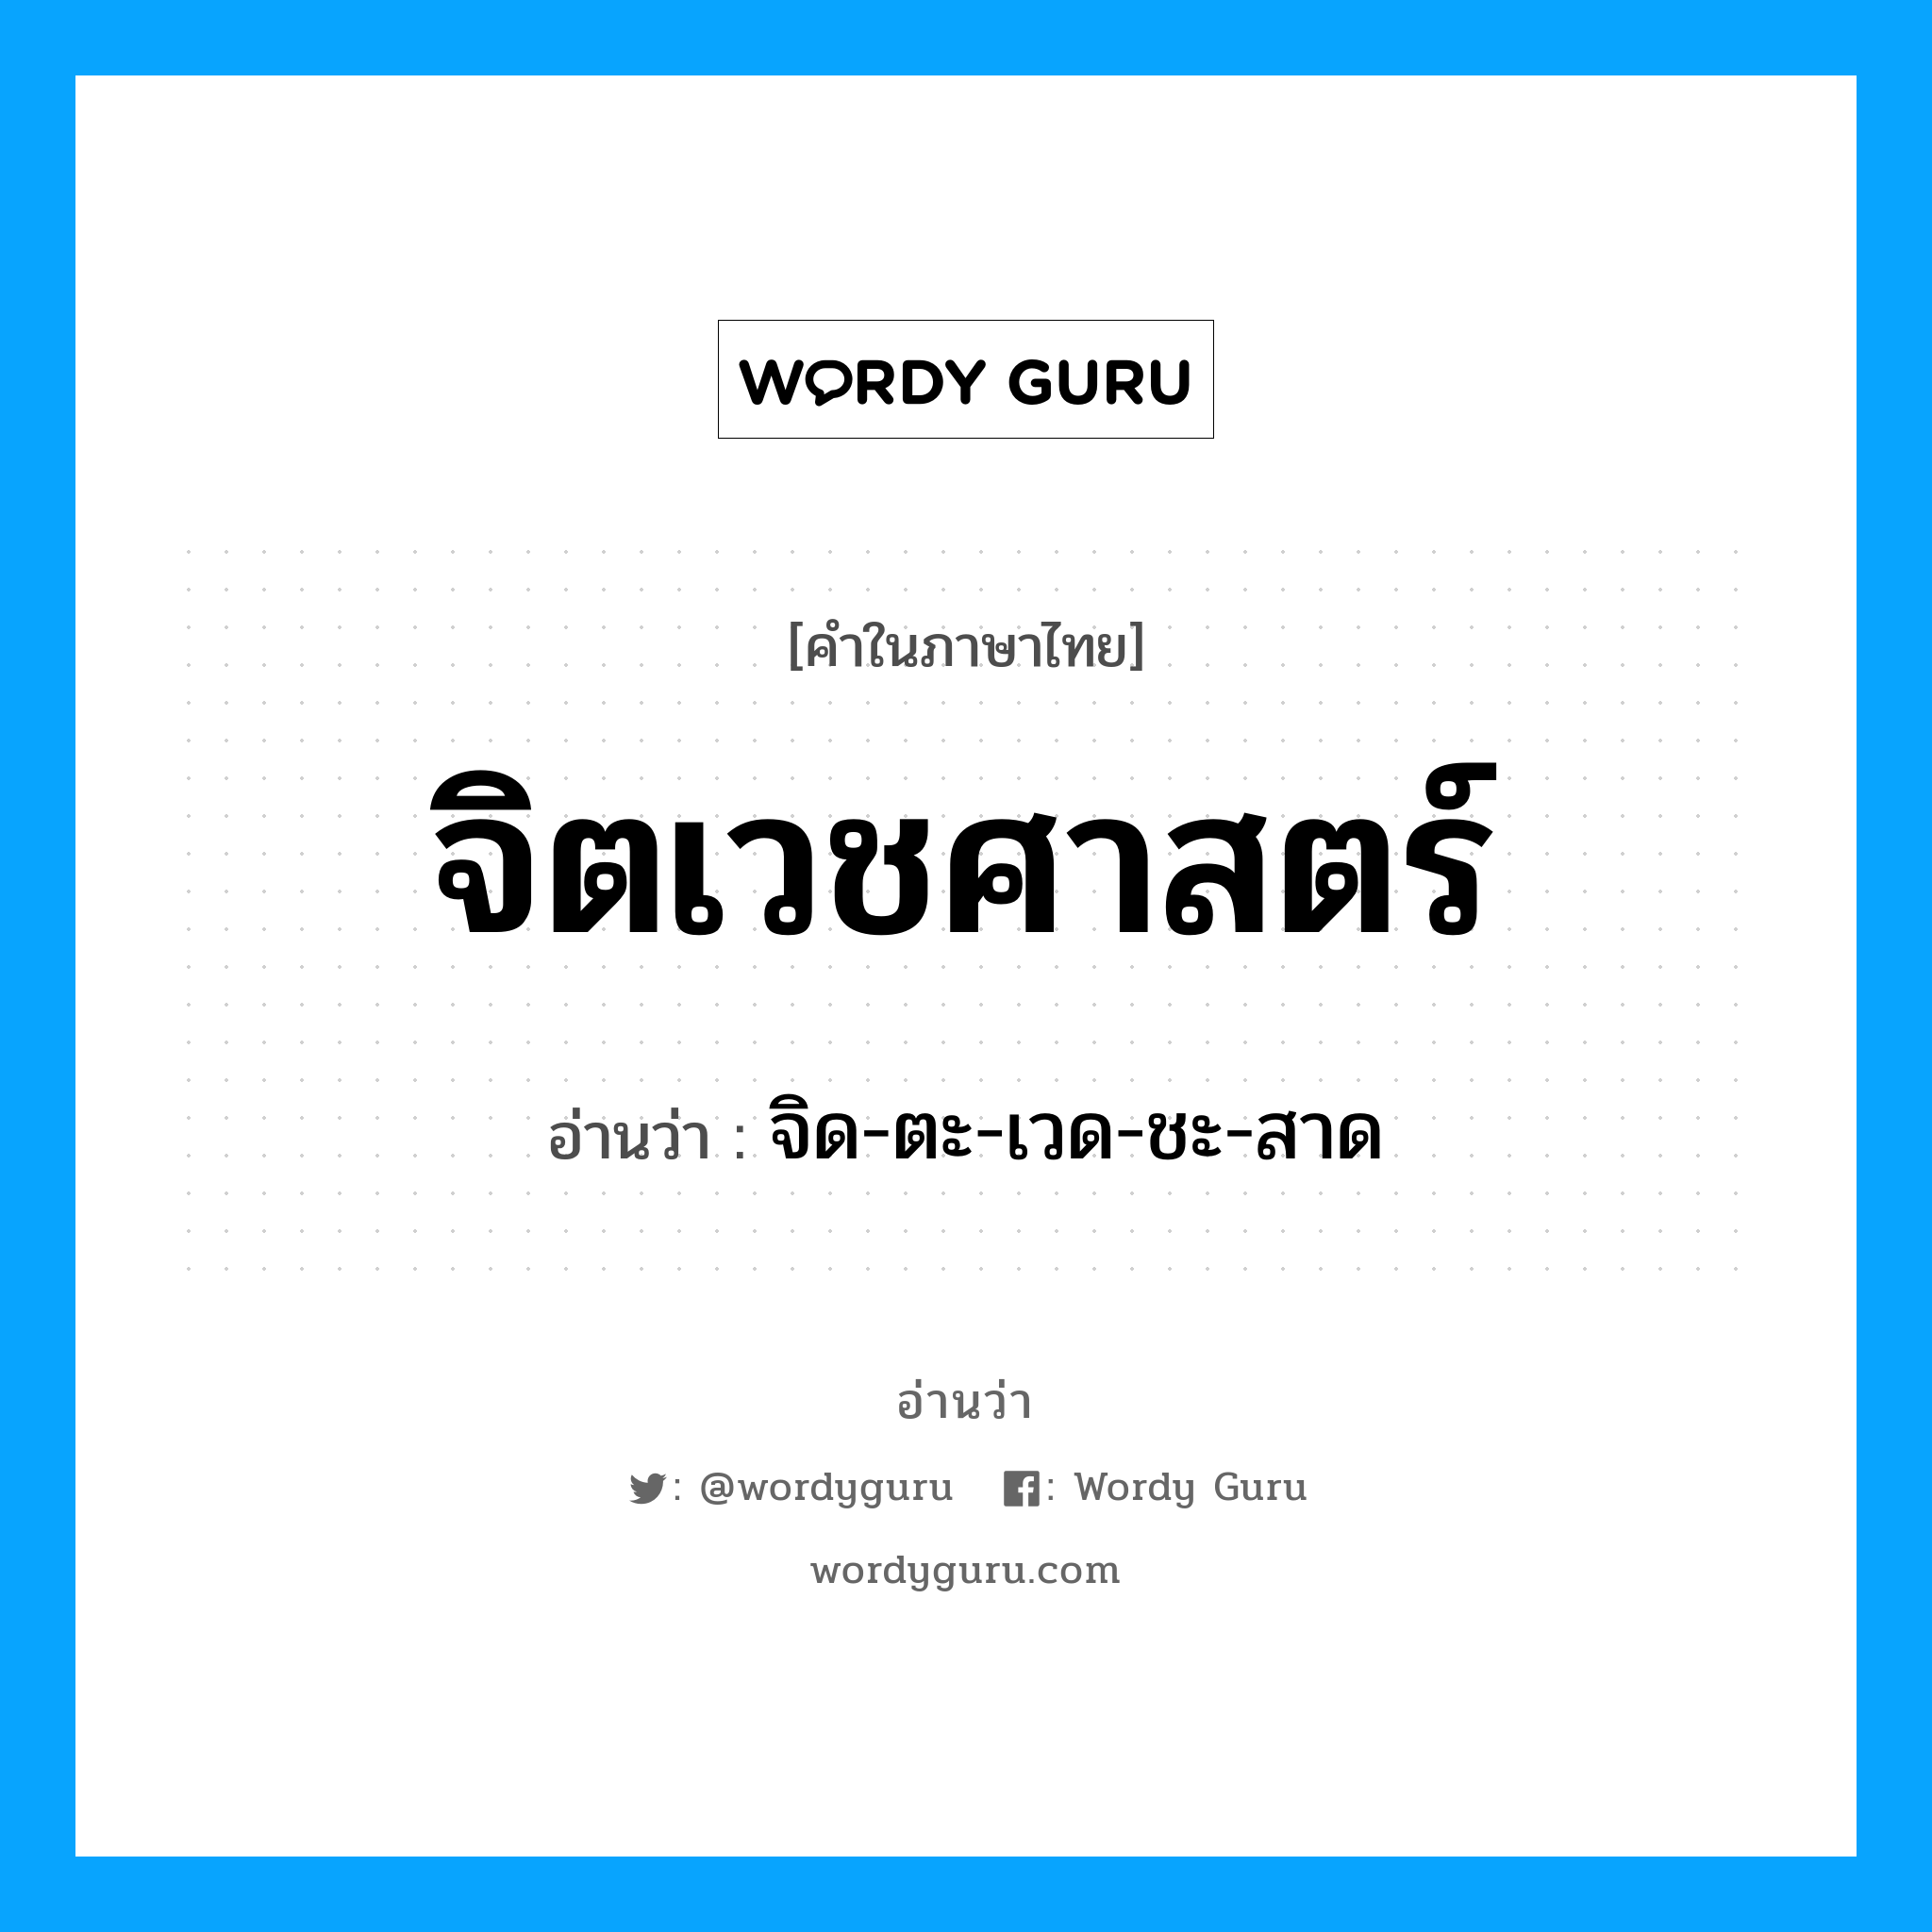 จิด-ตะ-เวด-ชะ-สาด เป็นคำอ่านของคำไหน?, คำในภาษาไทย จิด-ตะ-เวด-ชะ-สาด อ่านว่า จิตเวชศาสตร์